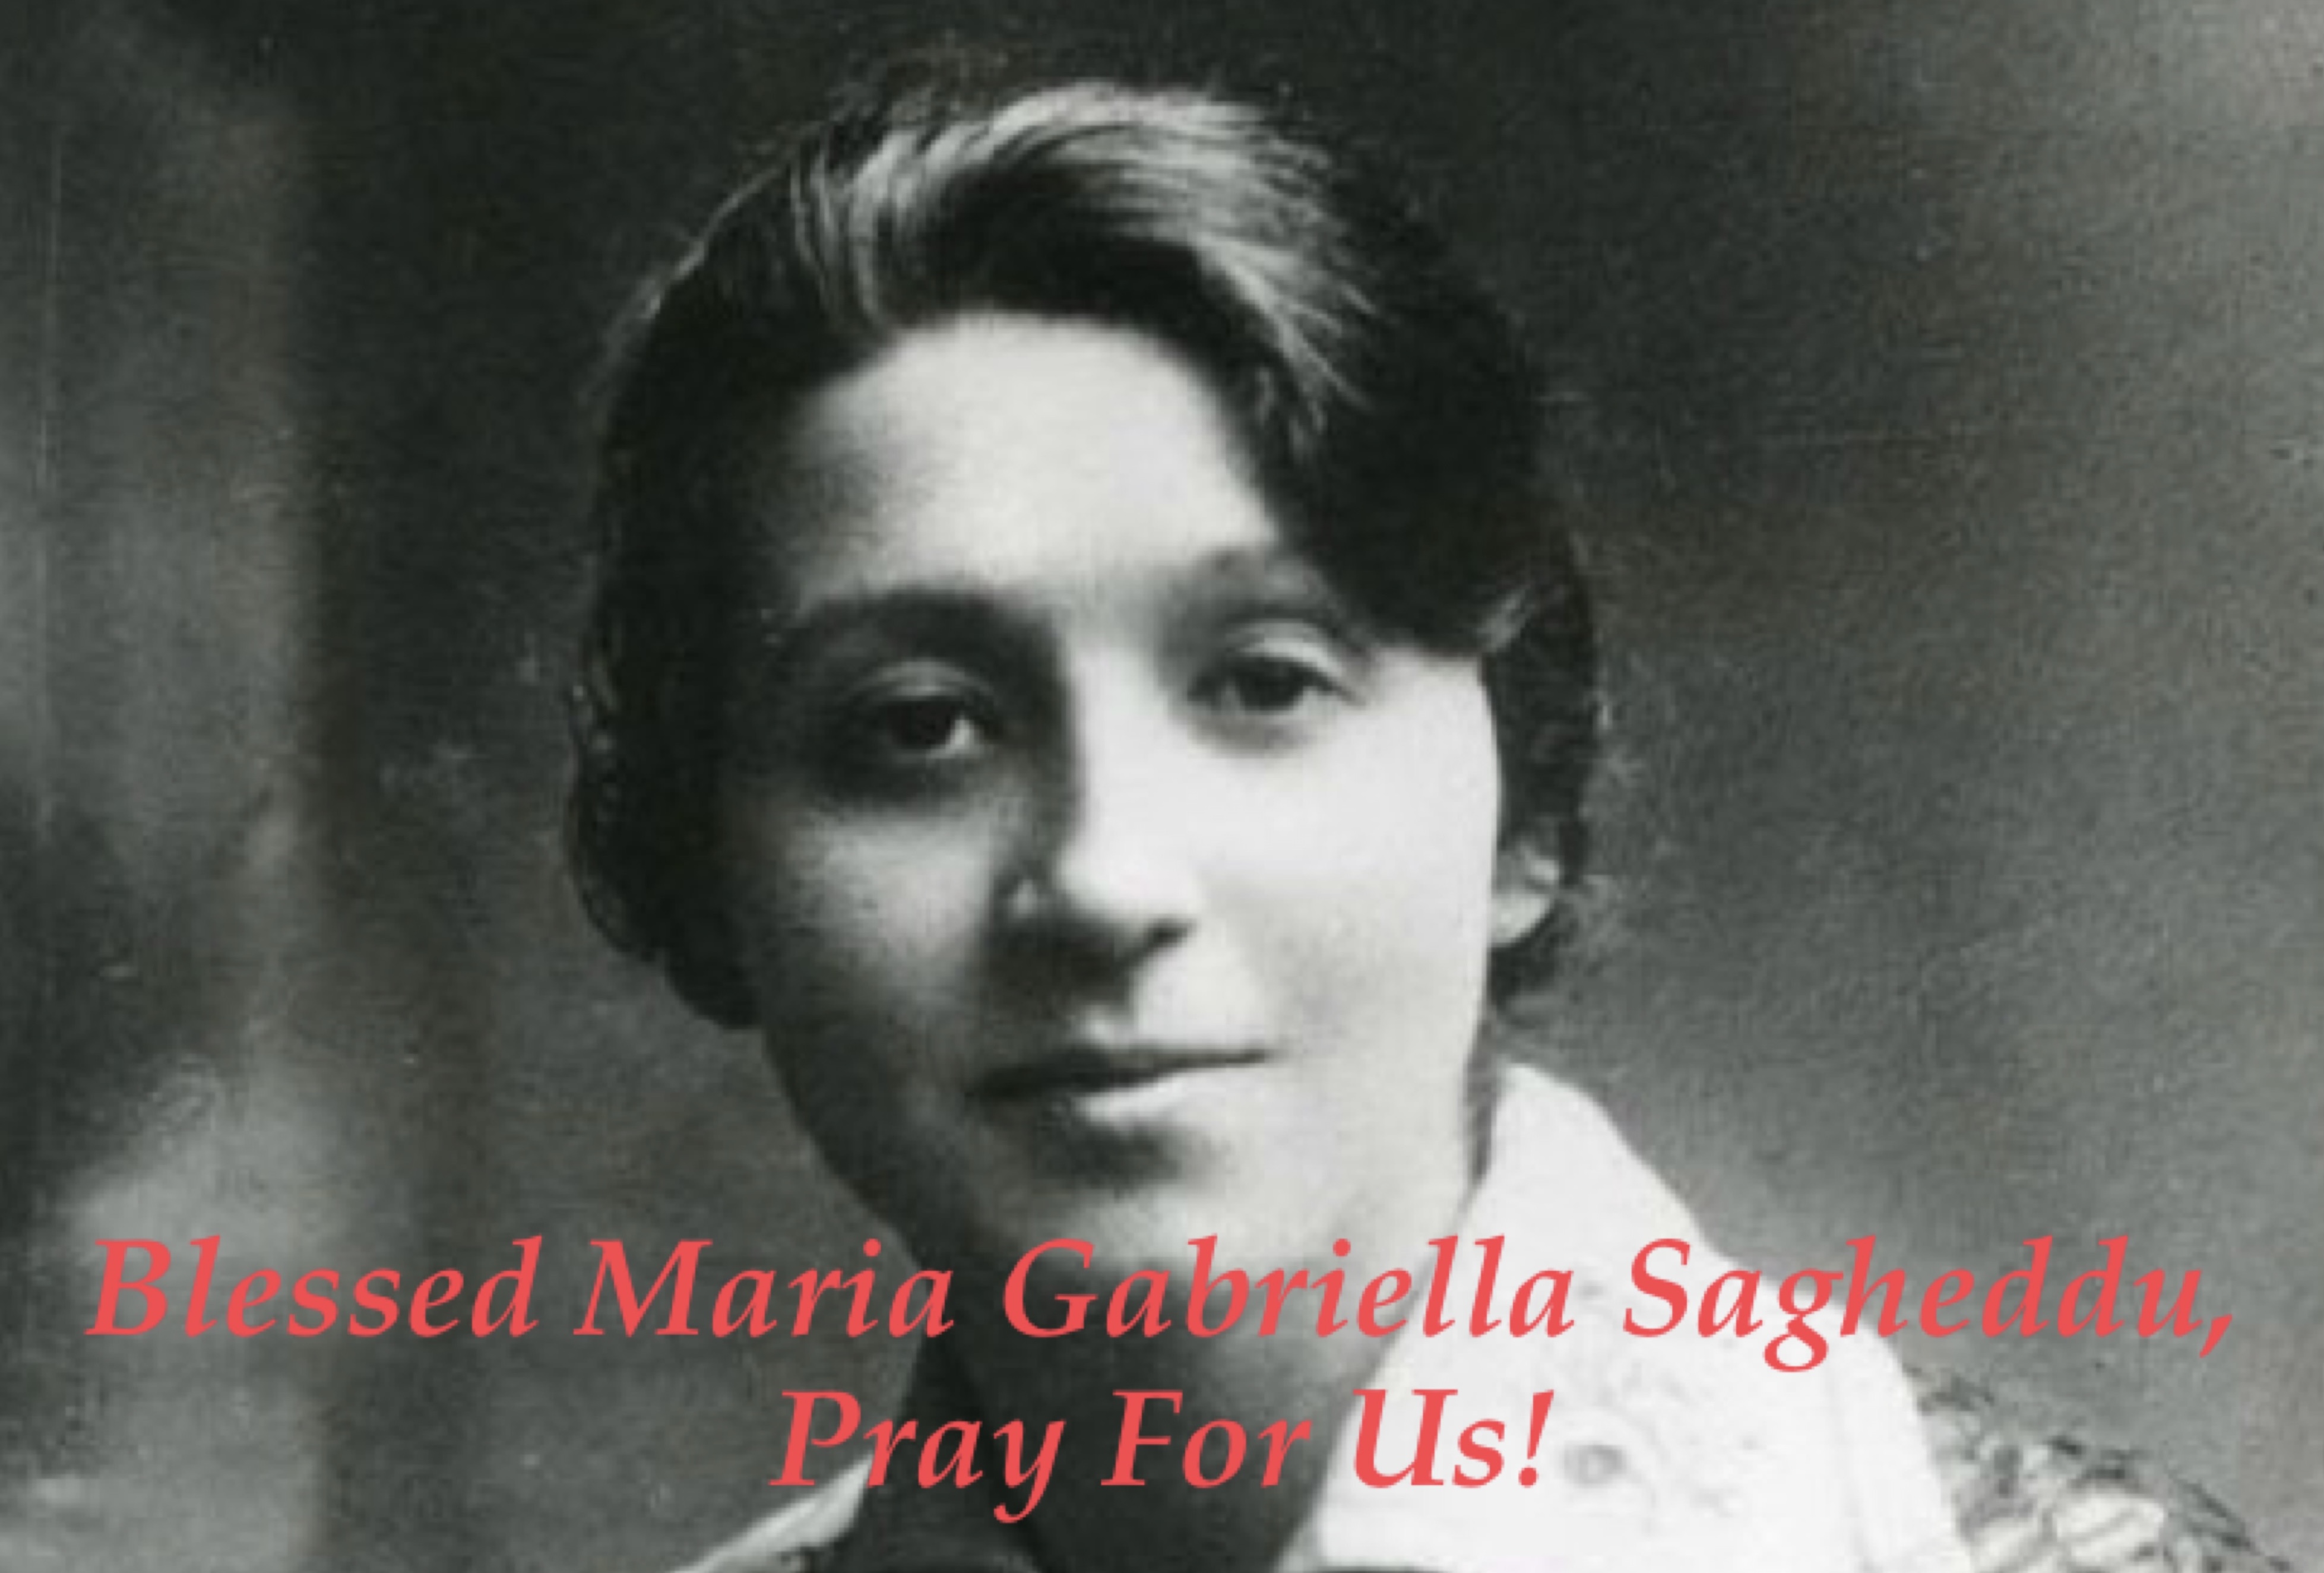 22nd April - Blessed Maria Gabriella Sagheddu